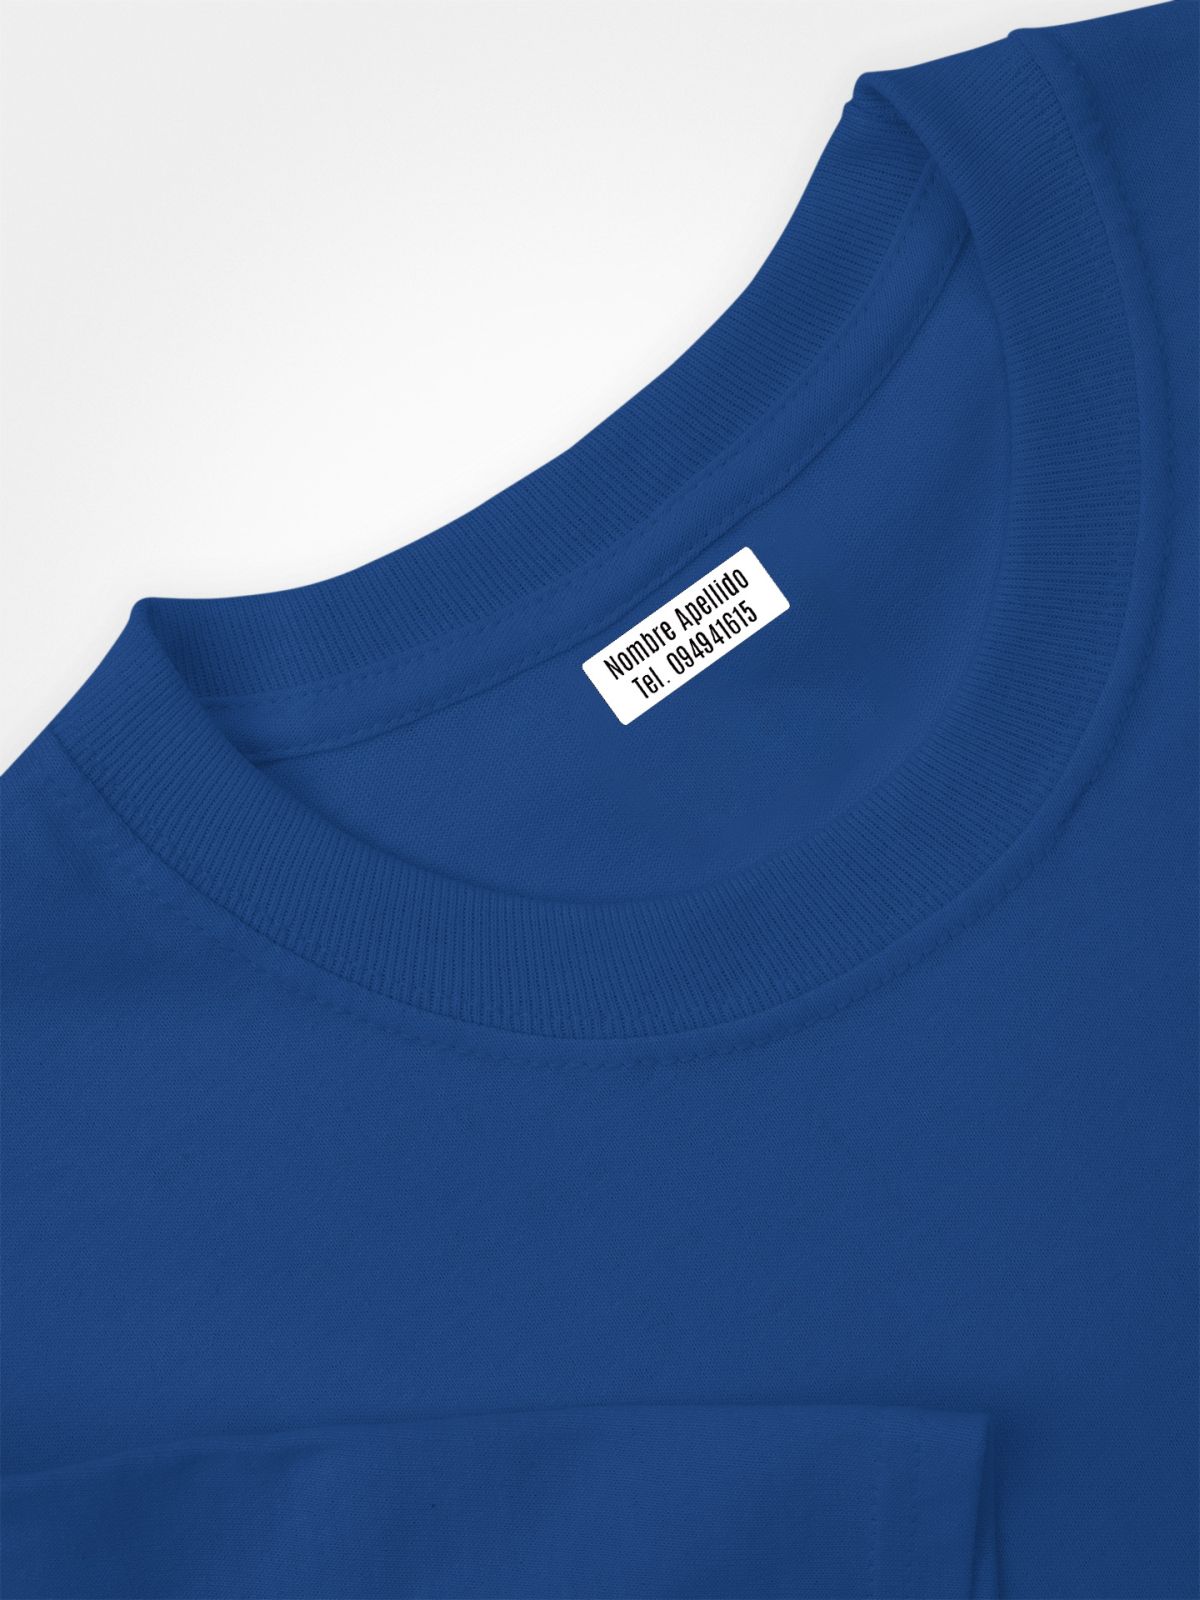  50 etiquetas personalizadas para ropa con foto o imagen   Etiquetas de vinilo termoadhesivas para marcar cualquier prenda. 2.4 x 0.4  in, color azul pastel : Productos de Oficina